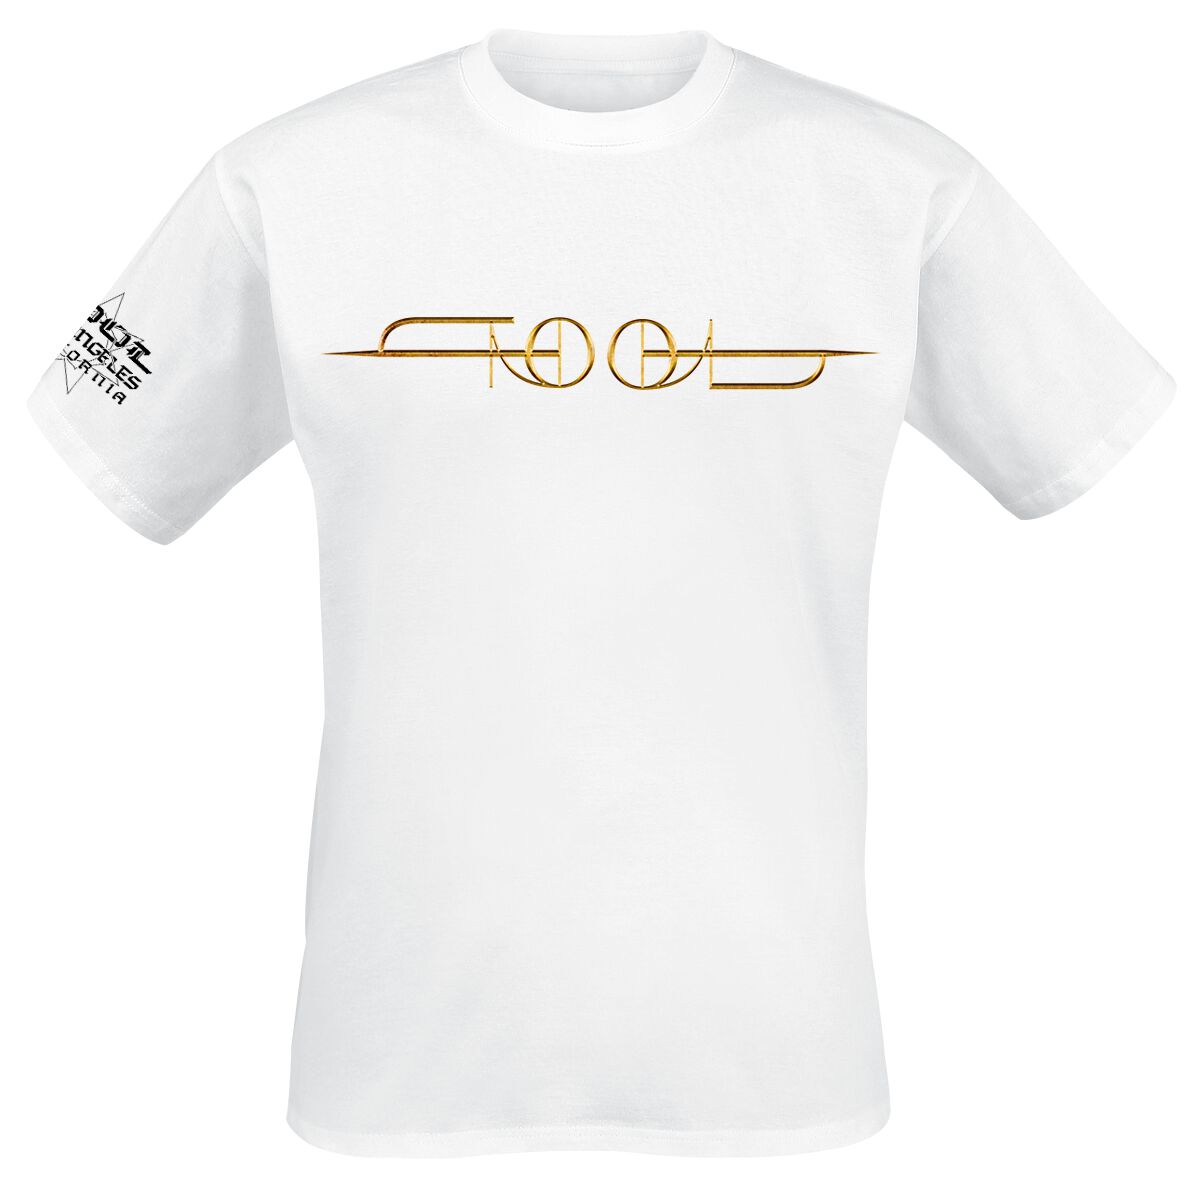 Tool T-Shirt - Gold ISO - L bis XXL - für Männer - Größe L - weiß  - Lizenziertes Merchandise!